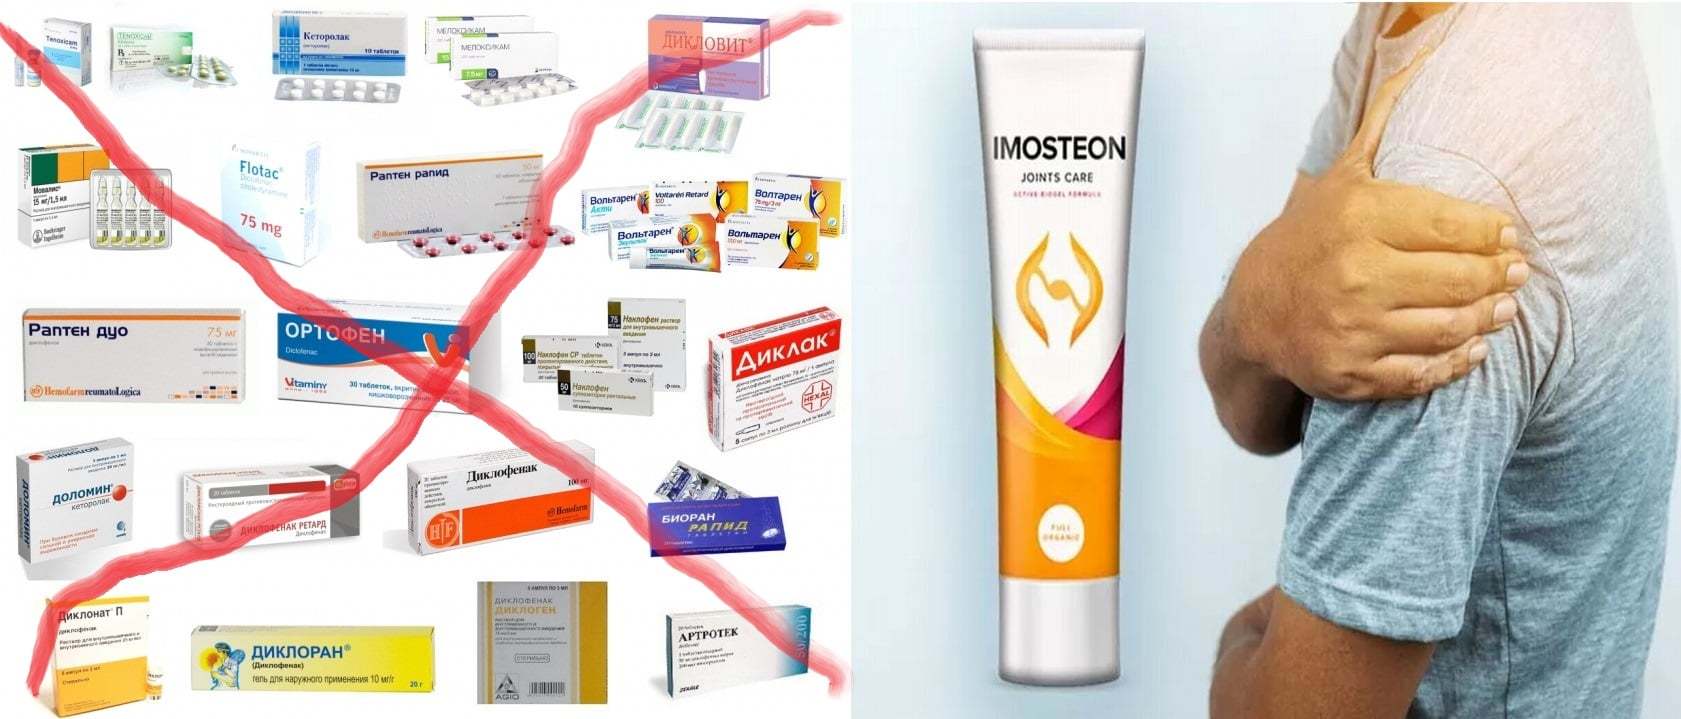 Imosteon - prospect - forum - cat costa - comanda - in farmacii - Romania - pret - pareri - ce este